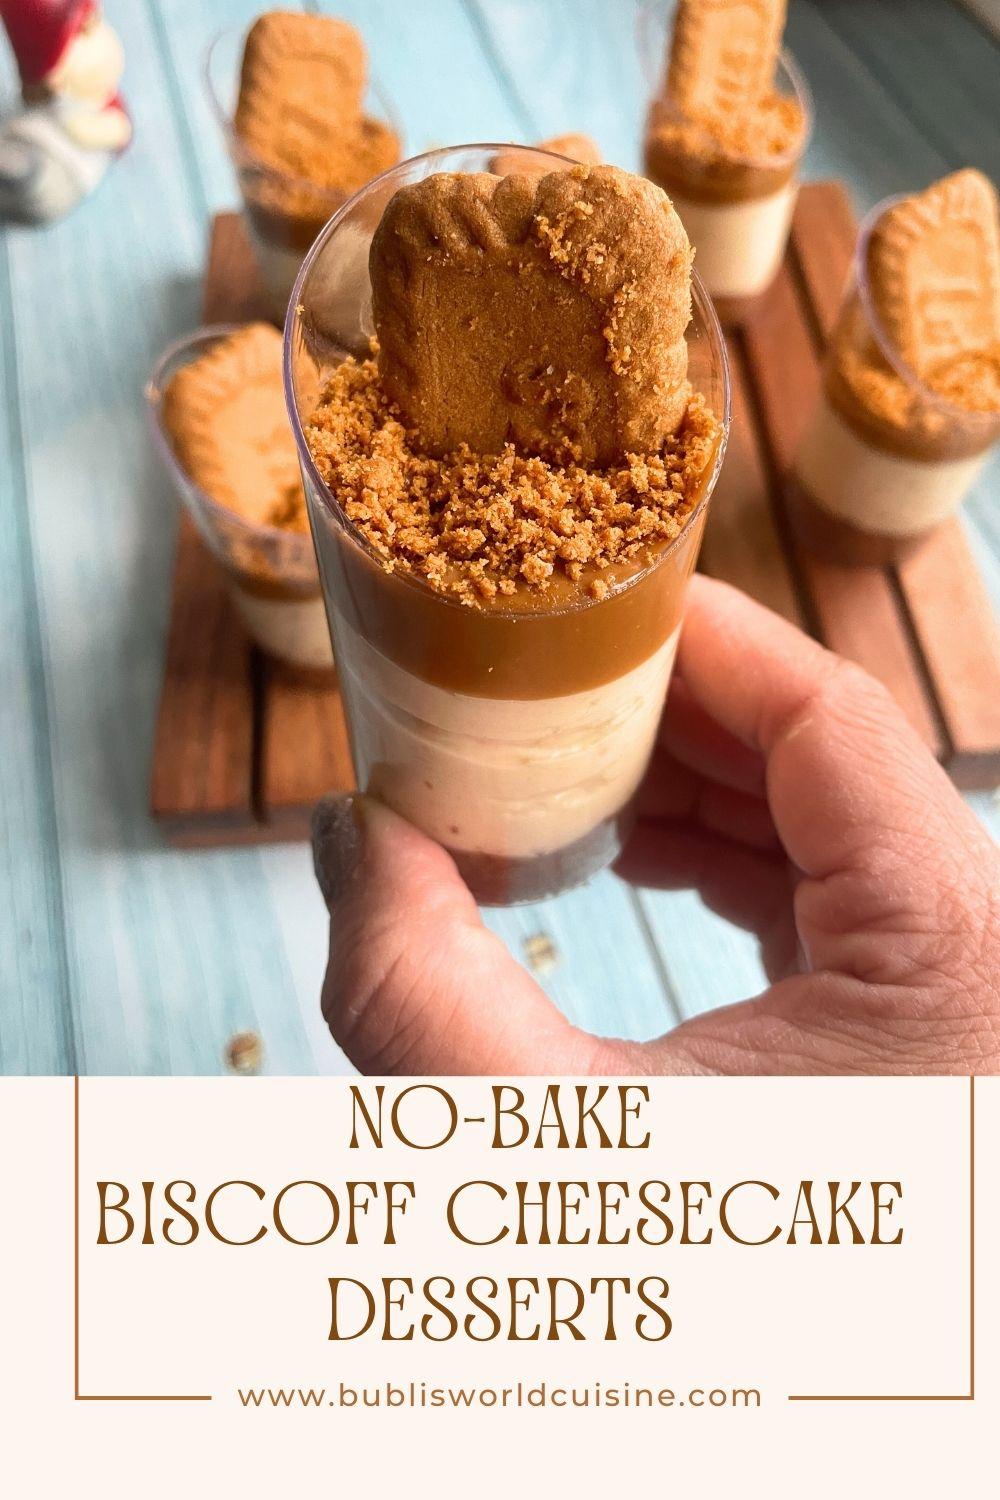 No-Bake Biscoff Cheesecake Desserts Pinterest.jpg